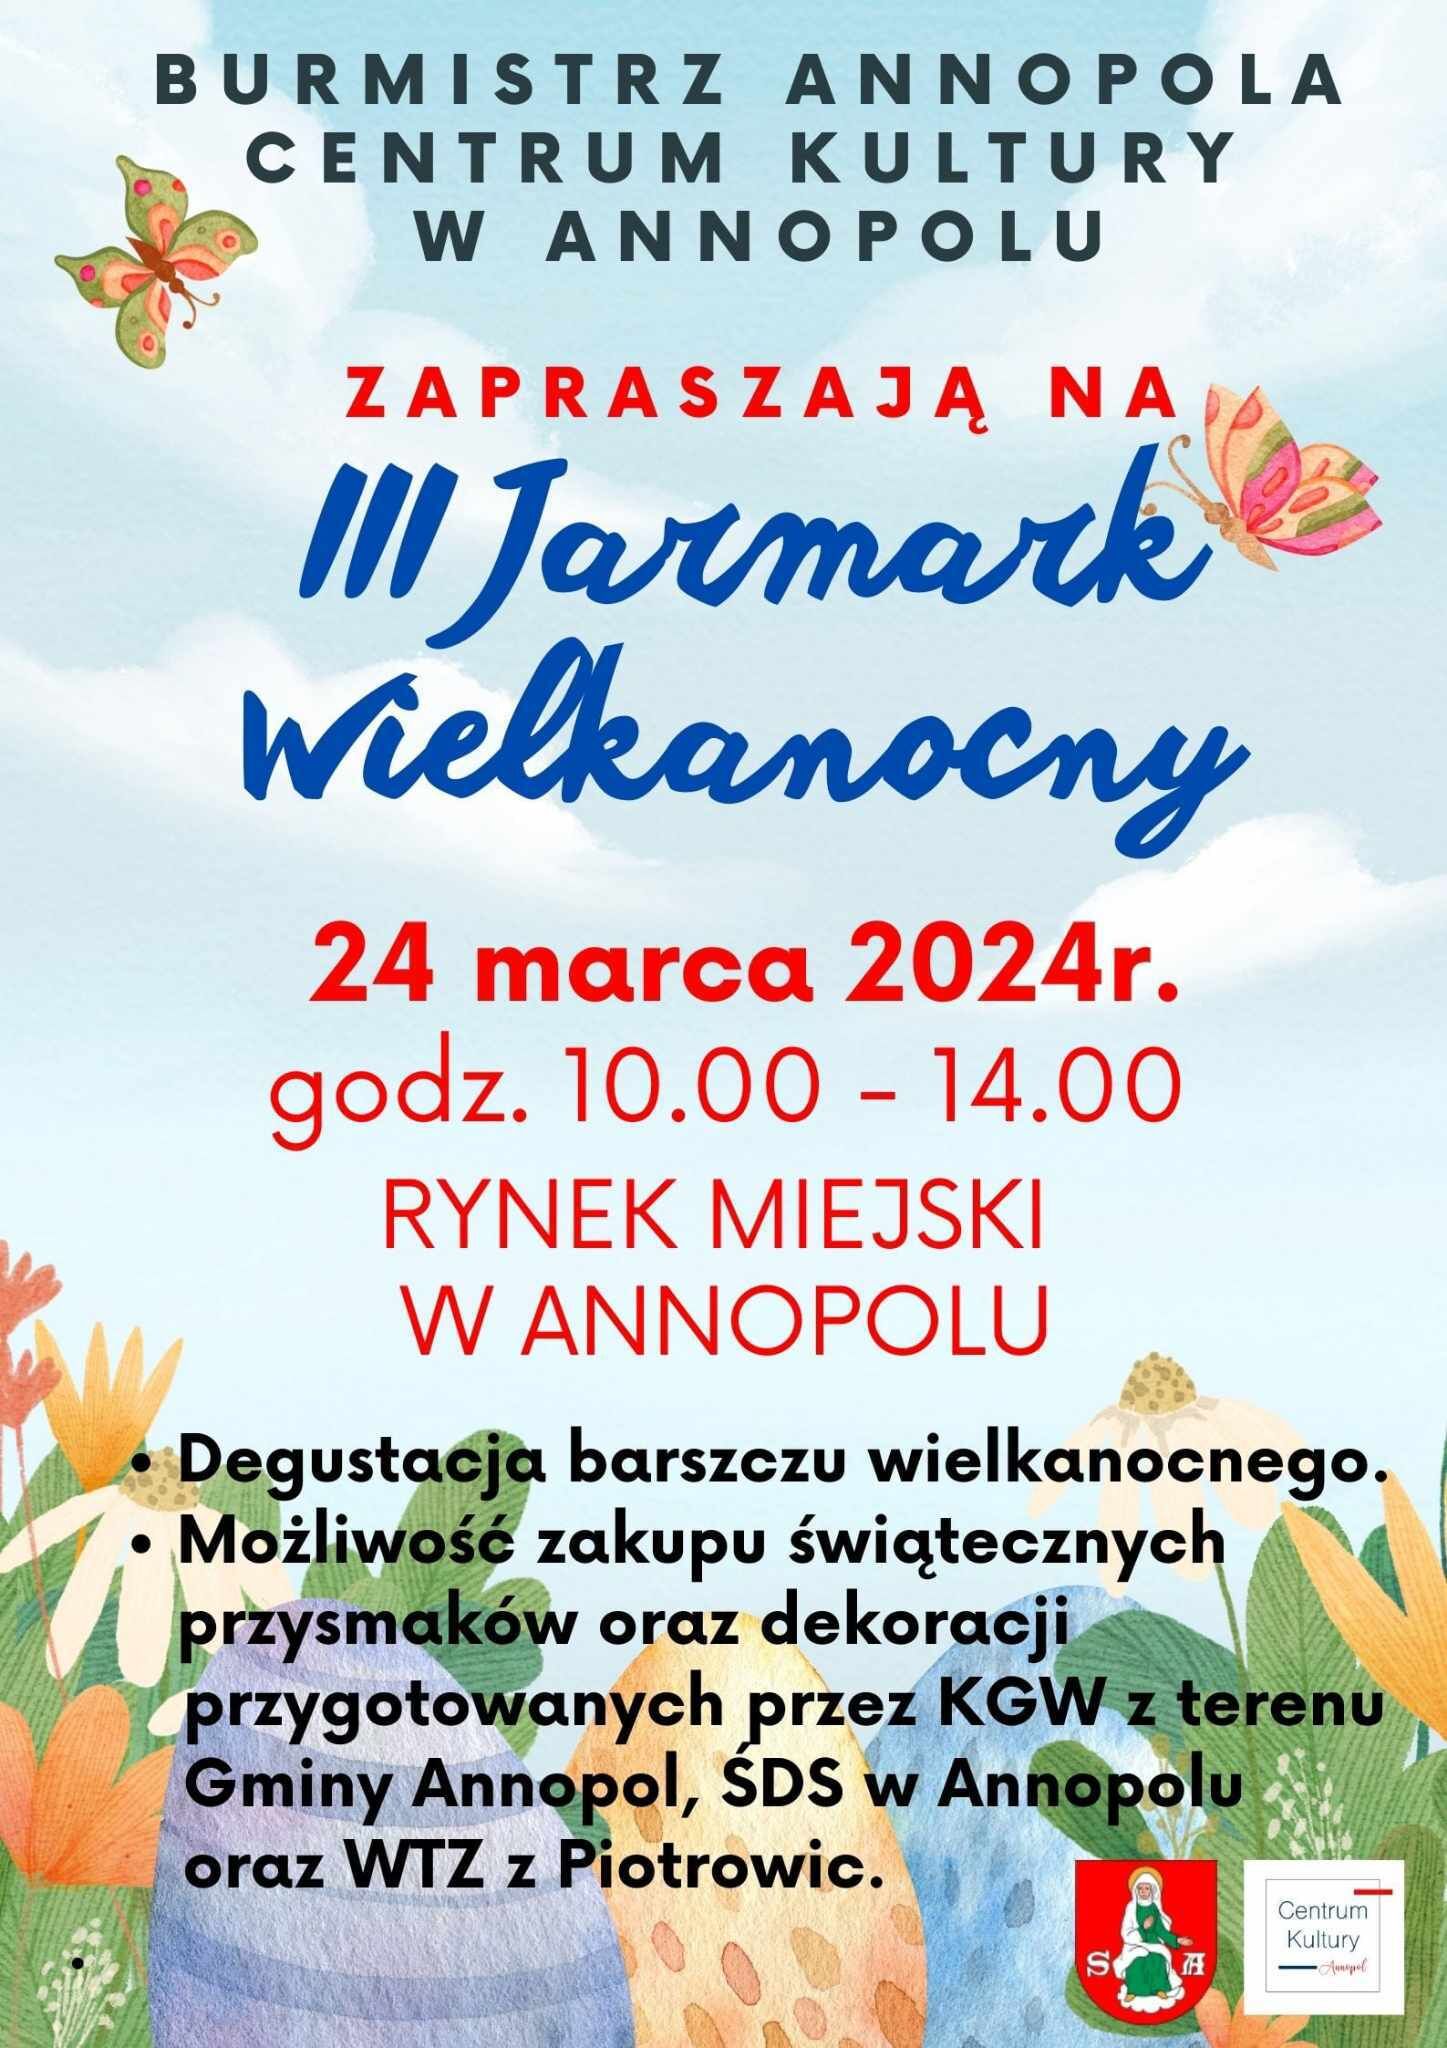 Plakat wydarzenia "Wielkanocny Kiermasz na Annopolu" organizowany przez Centrum Kultury w Annopolu, zapowiadający stoiska z ozdobami świątecznymi i warsztaty dekoracji jajek, który odbędzie się 24 marca od 10:00 do 14:00 na rynku miasta Annopol.